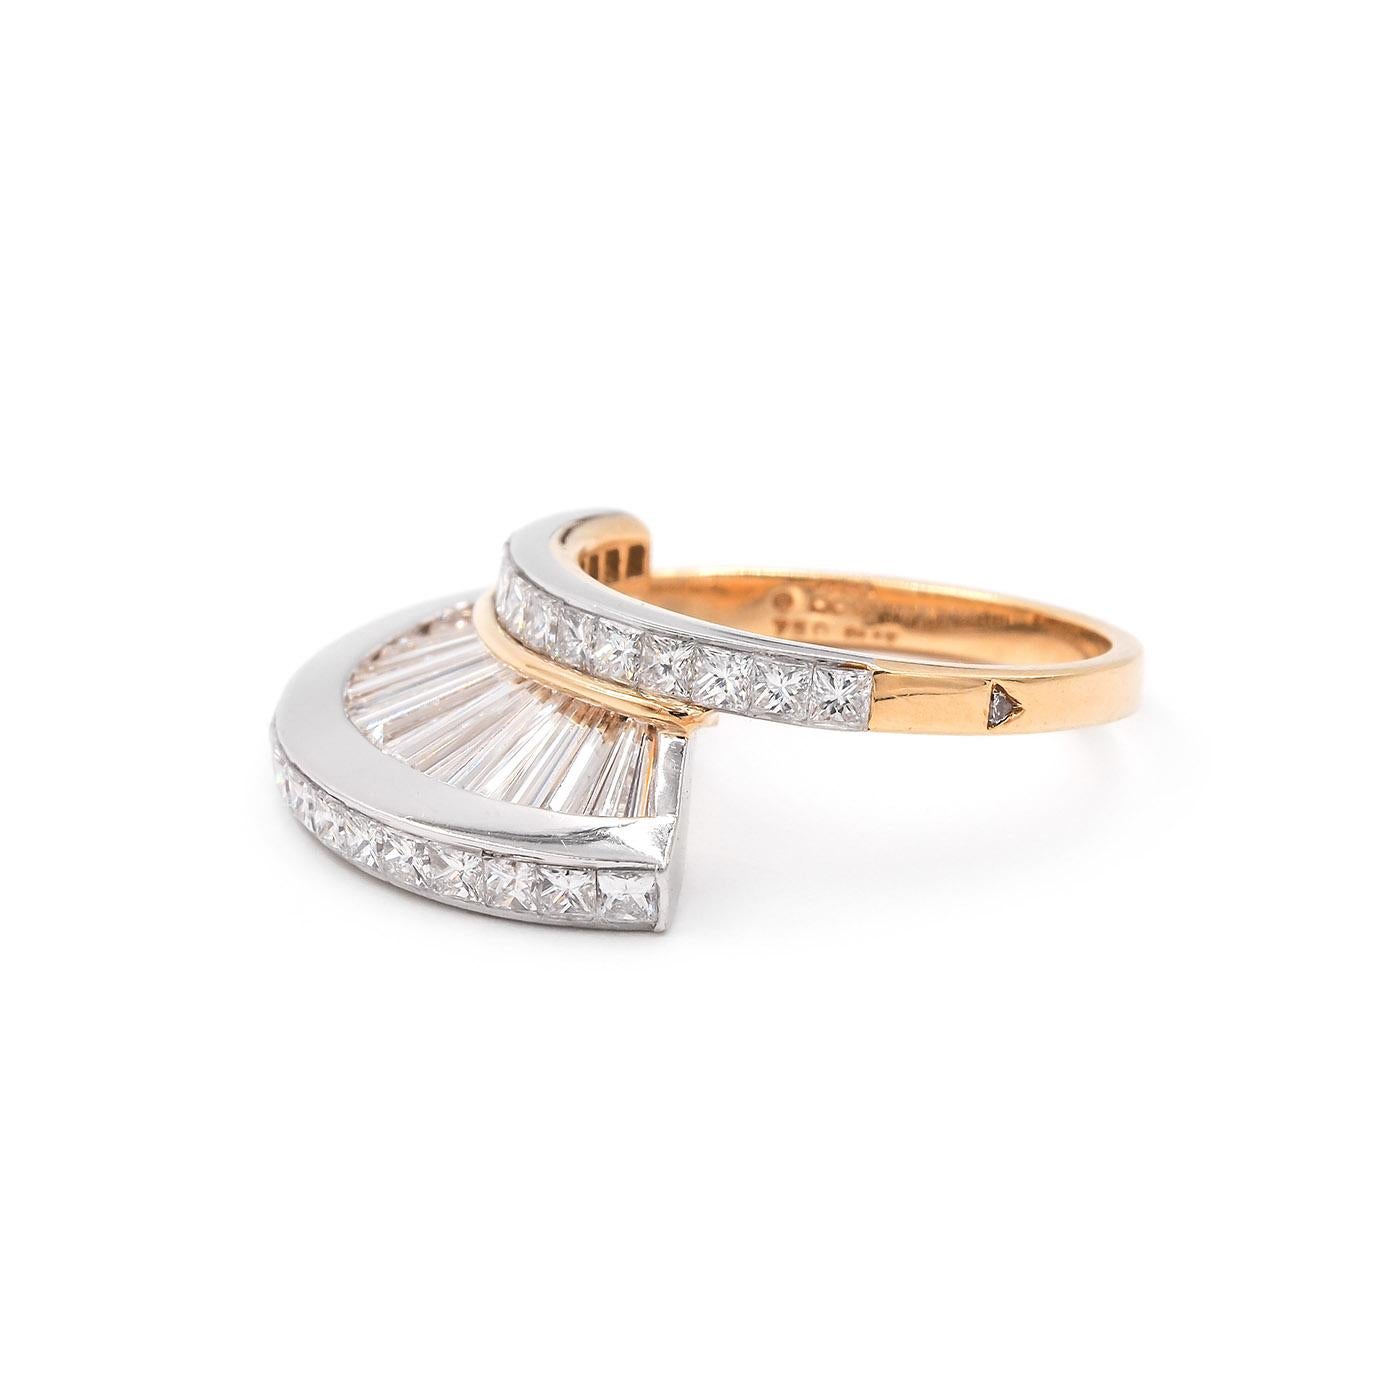 Vintage Baguette Cut & Princess Cut Diamond 'Fan' Ring Set by MWI Eloquence For Sale 3